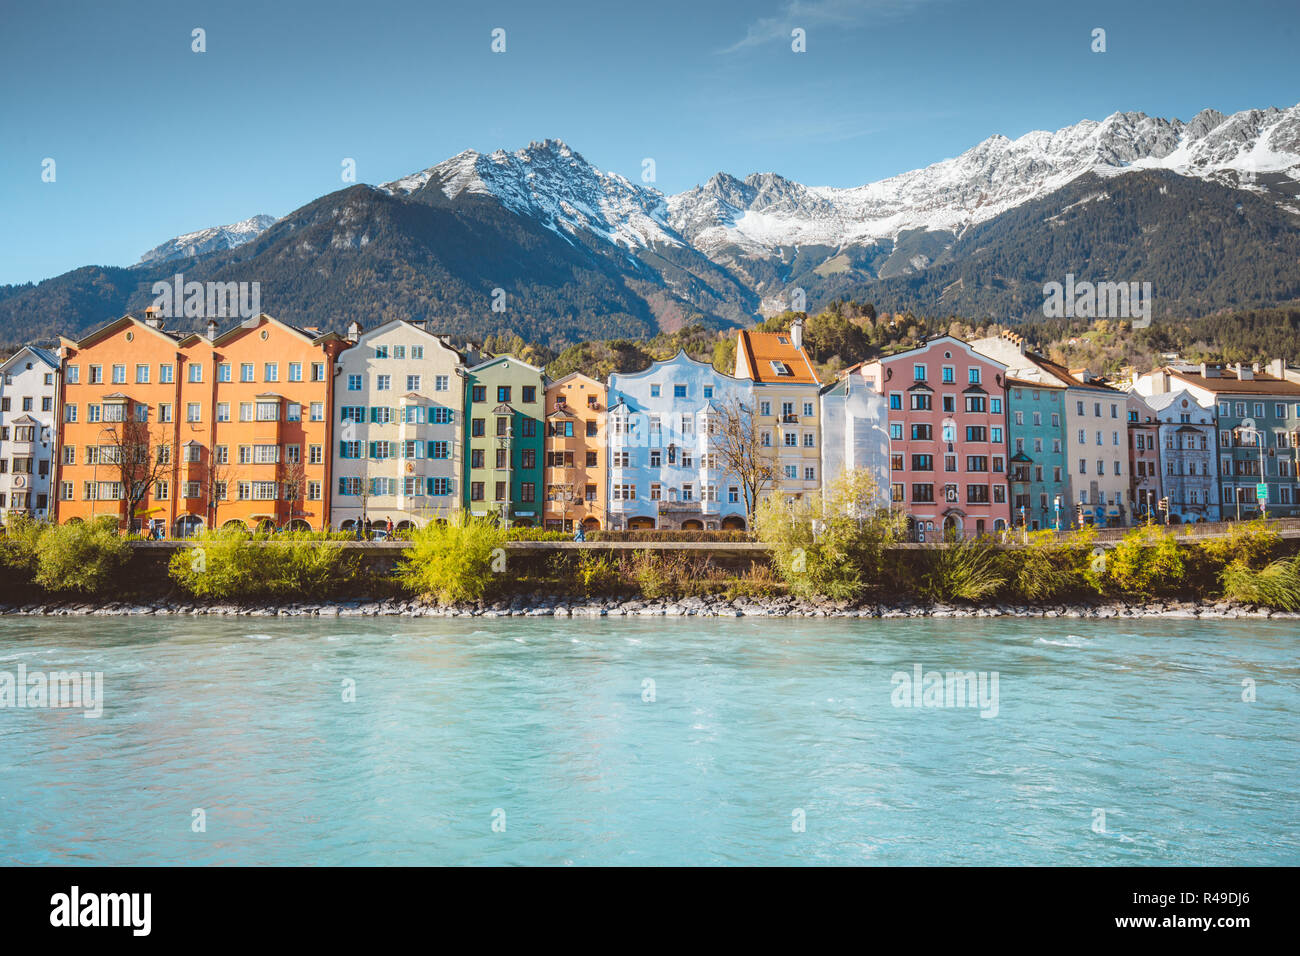 Centro storico di Innsbruck con case colorate lungo il fiume Inn e famosa montagna austriaca i vertici in background, Tirolo, Austria Foto Stock